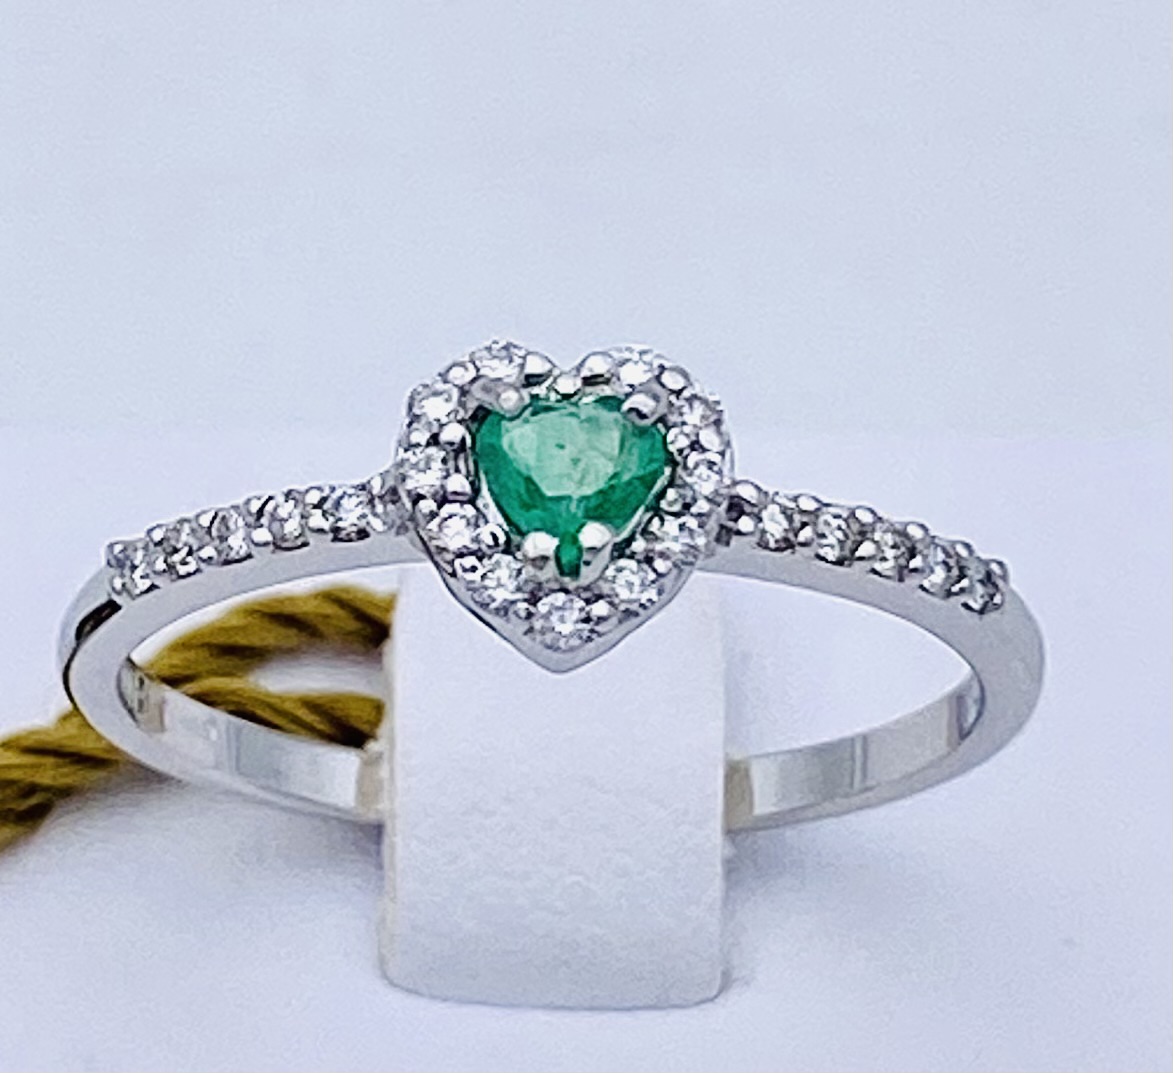 Anello smeraldo diamanti oro bianco 750% art.AN2821S